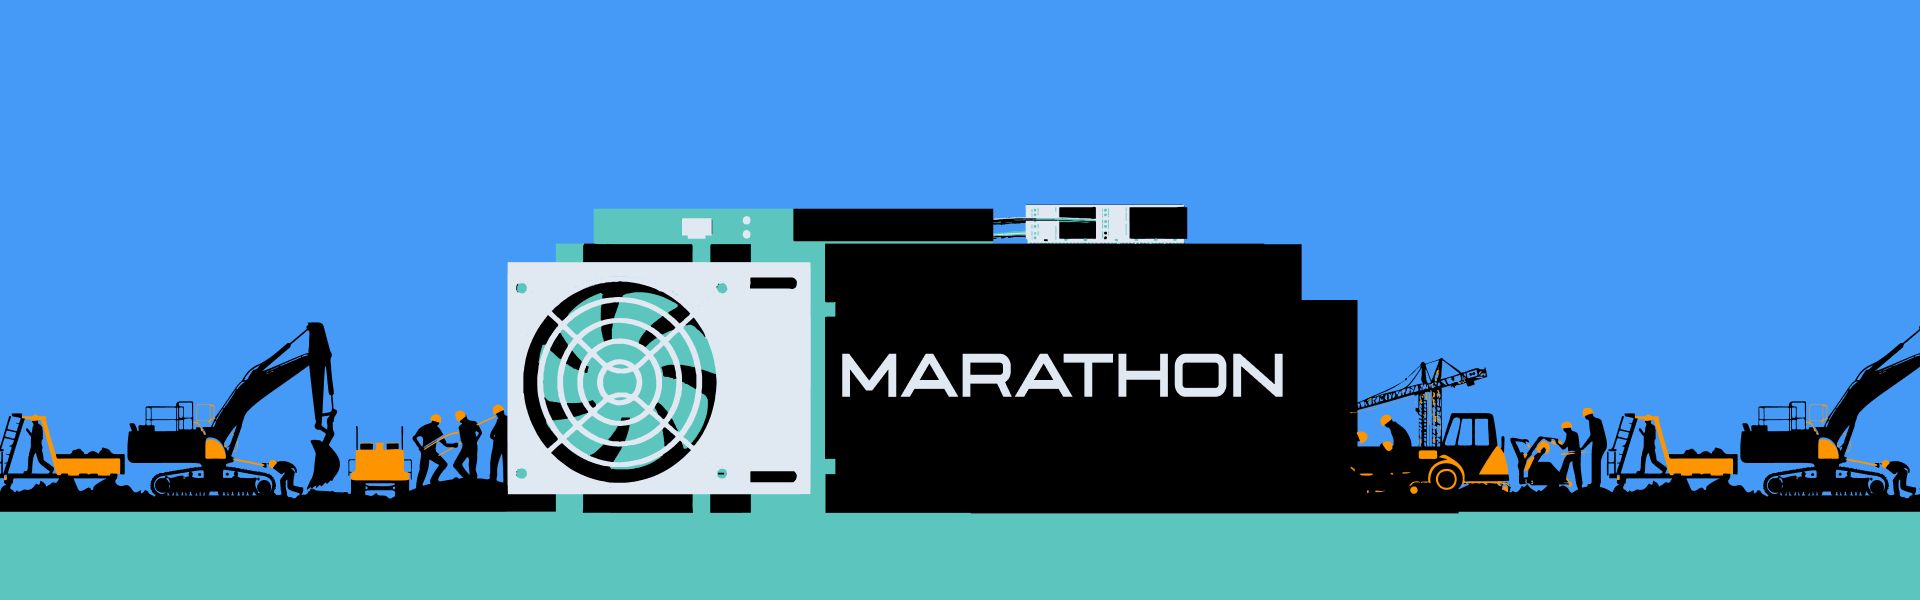 Marathon Digital збільшила видобуток біткоїнів на 28%